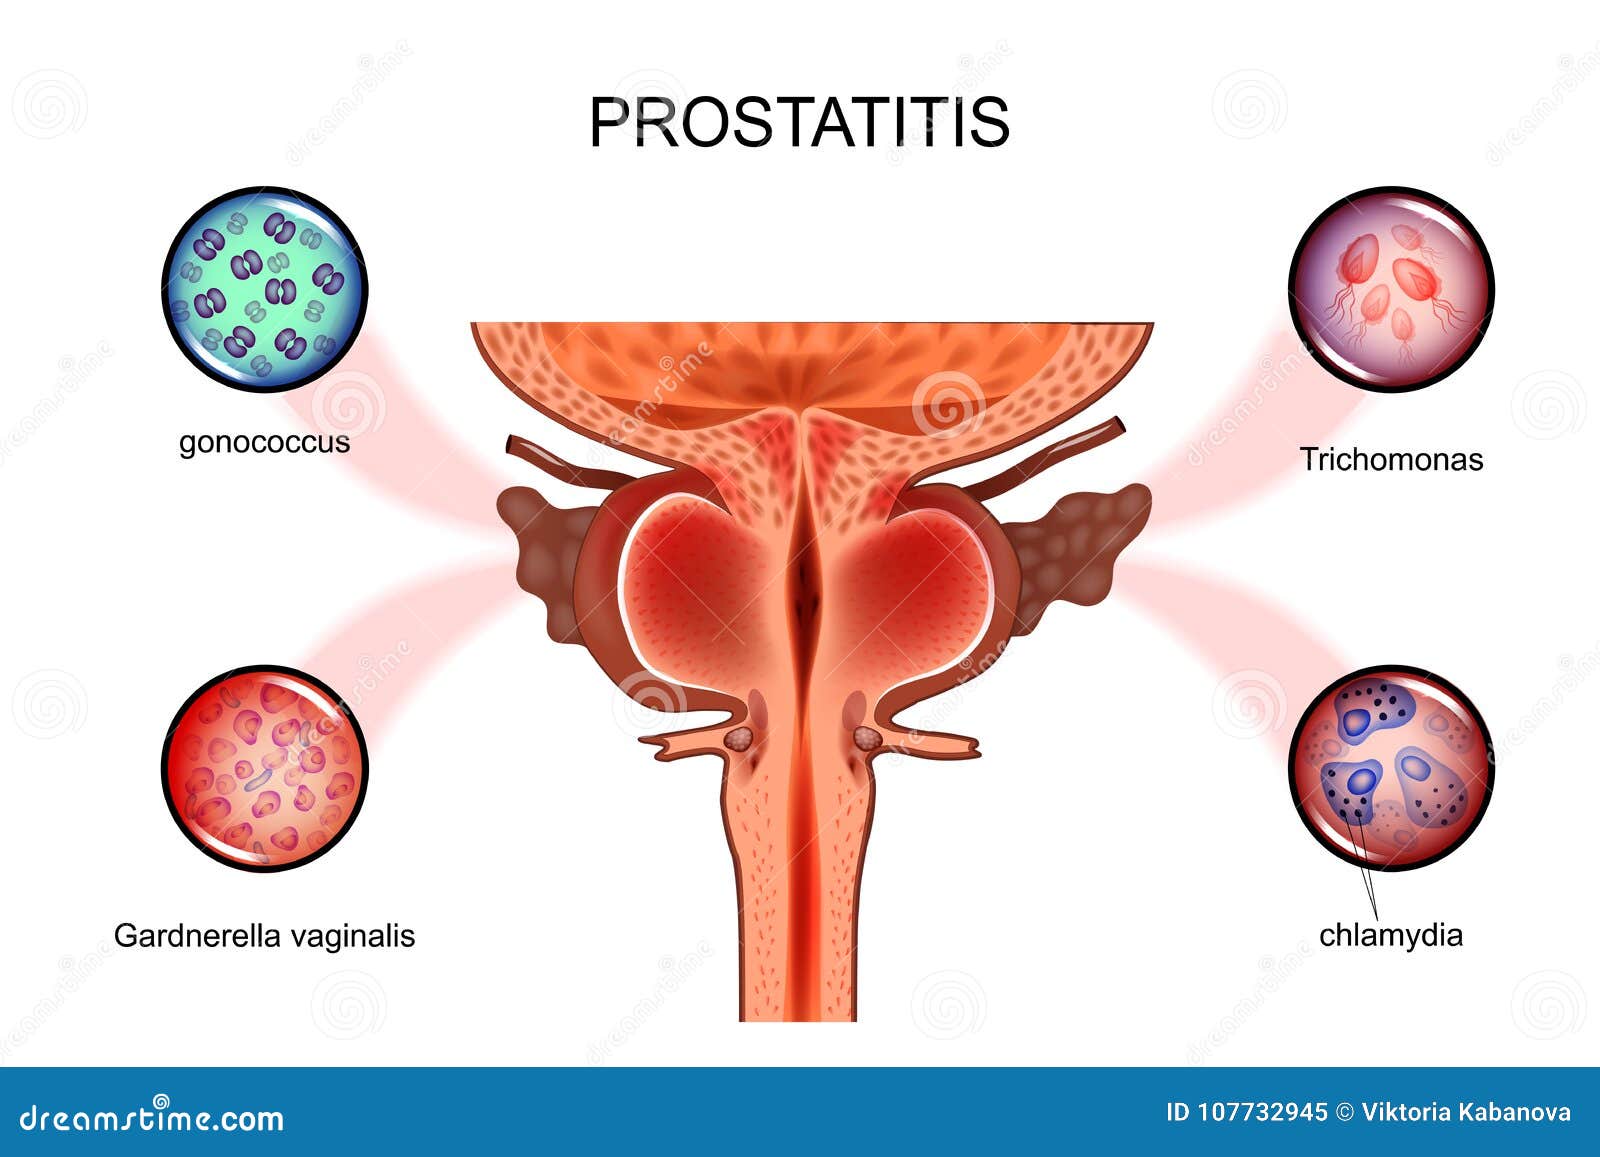 prostatitis pdf gpc